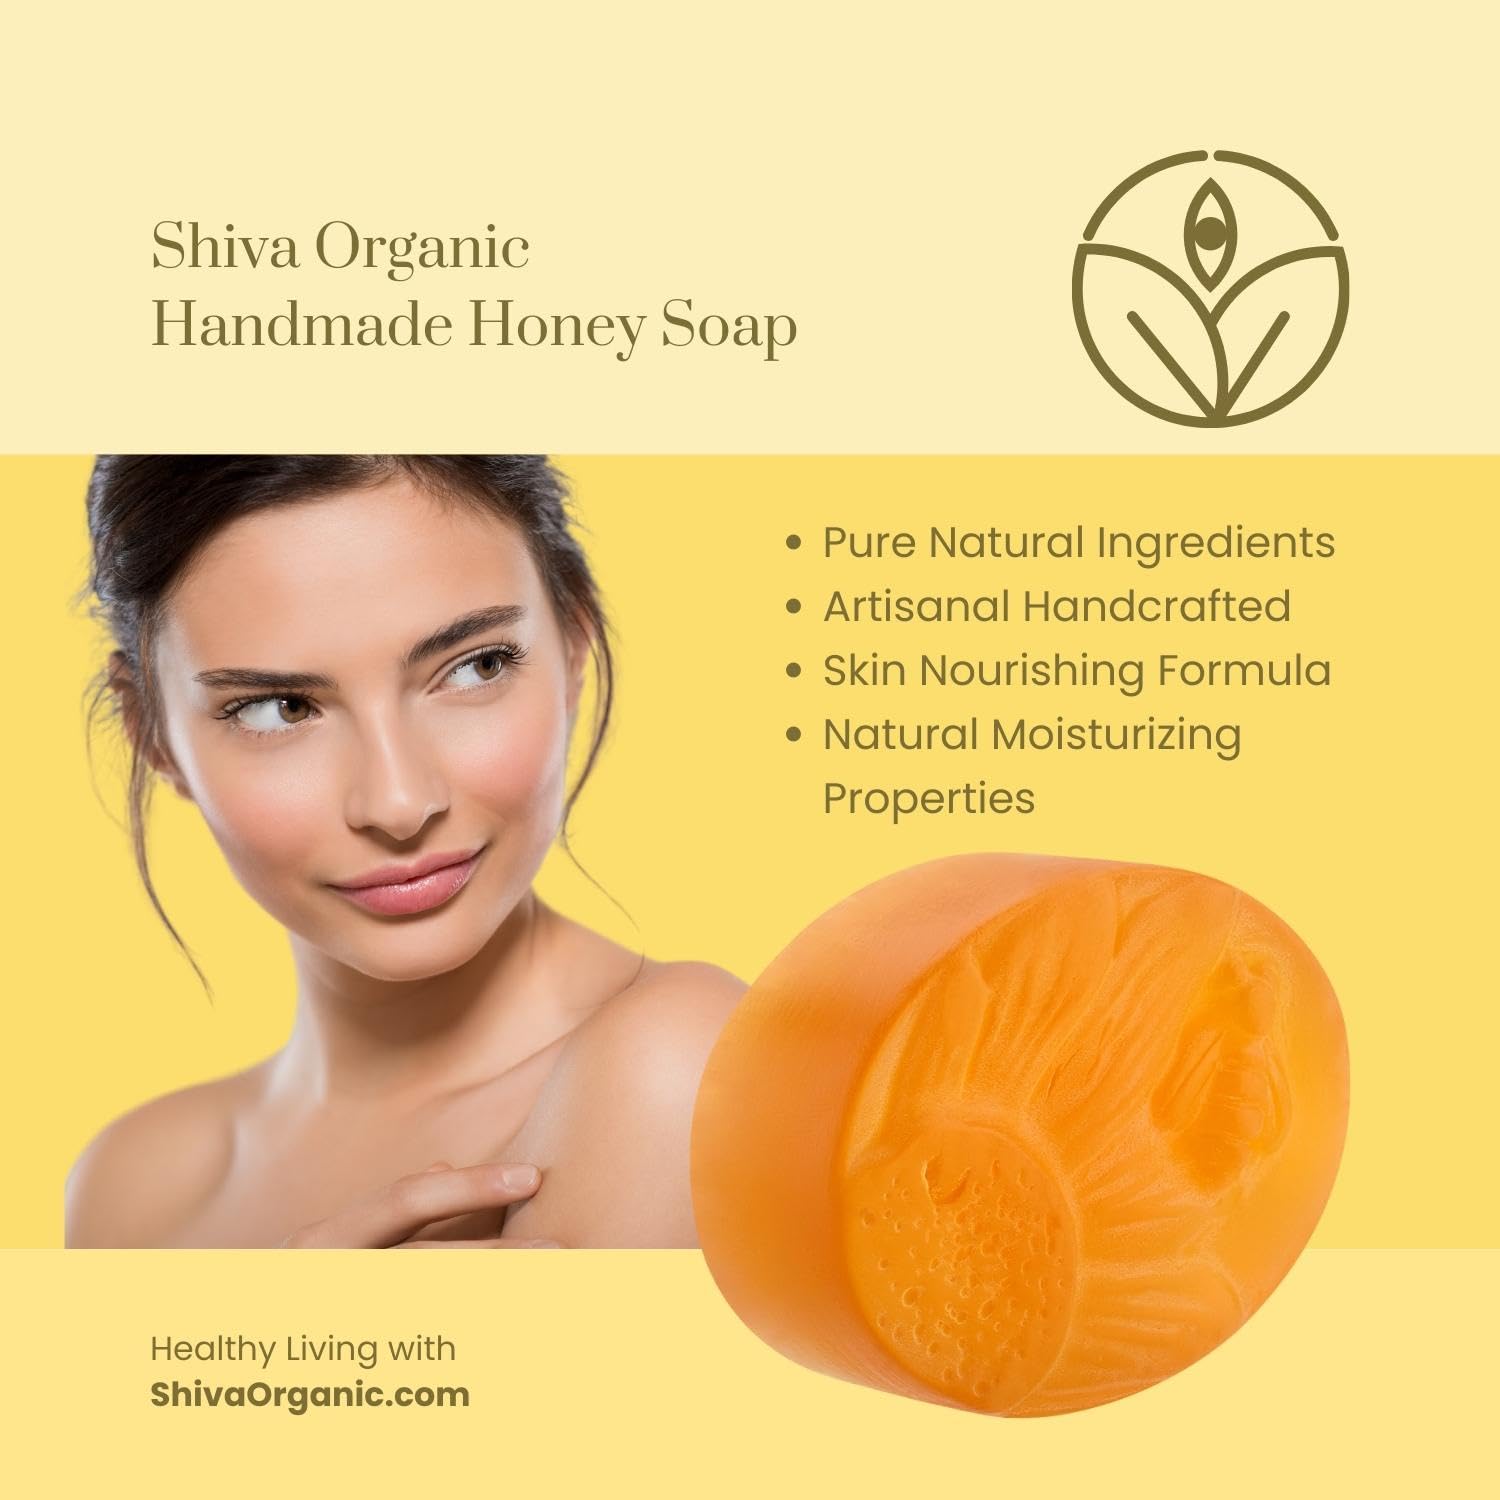 Shiva Organic’s Handmade Honey Soap